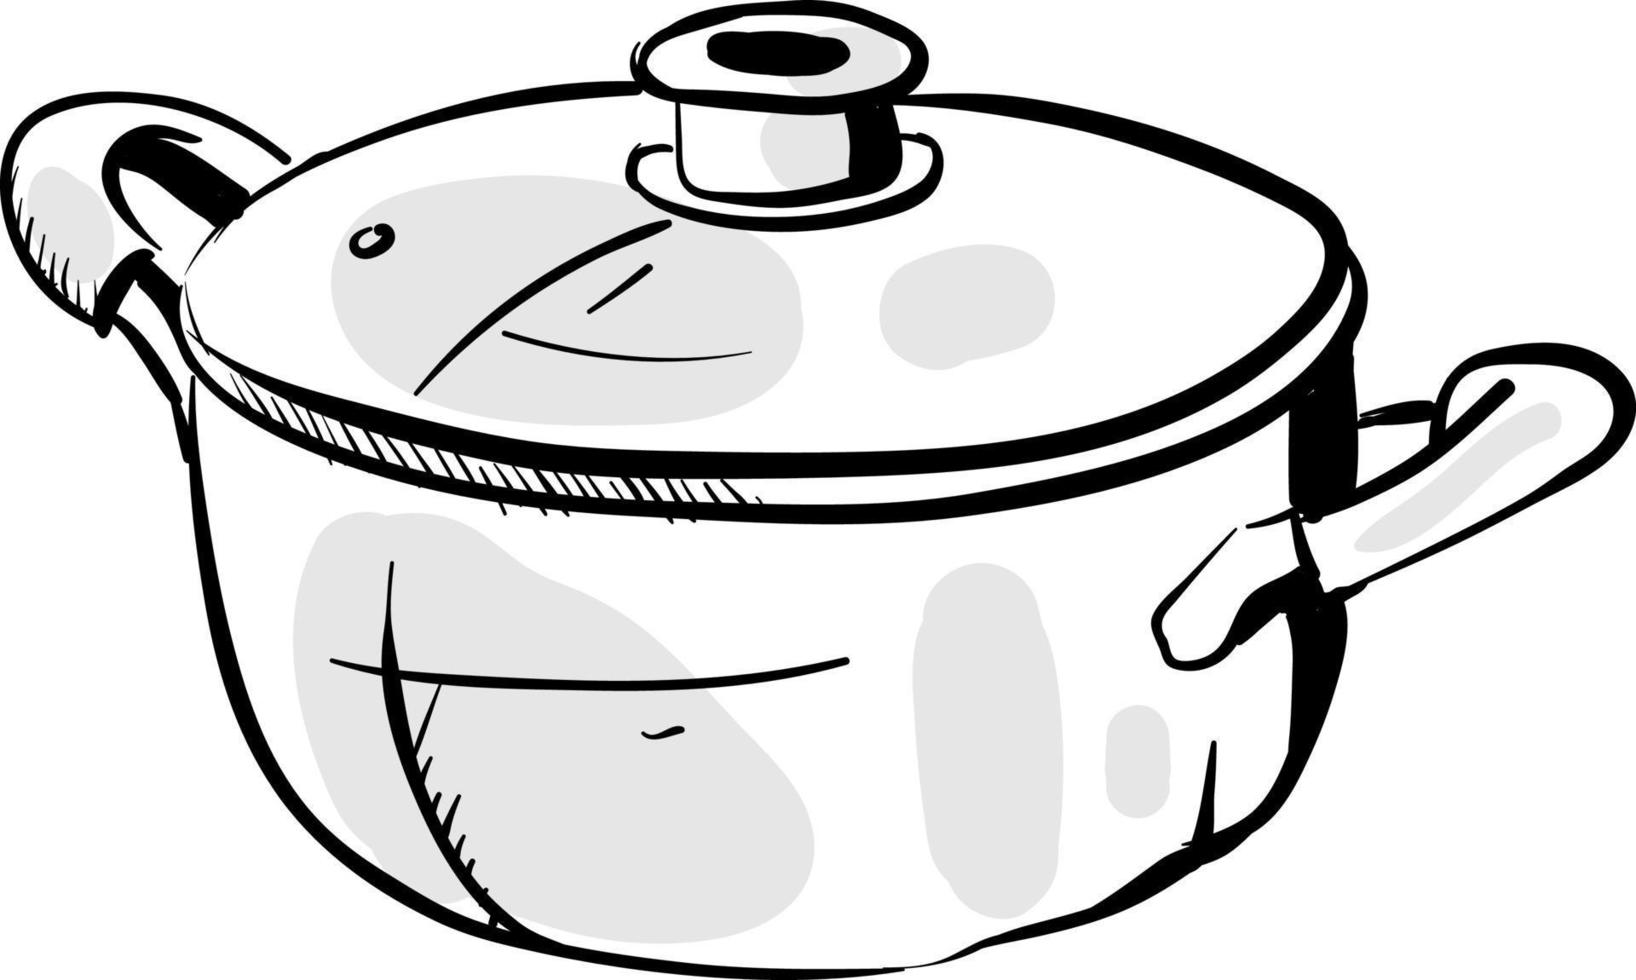 Dibujo de olla de cocina, ilustración, vector sobre fondo blanco.